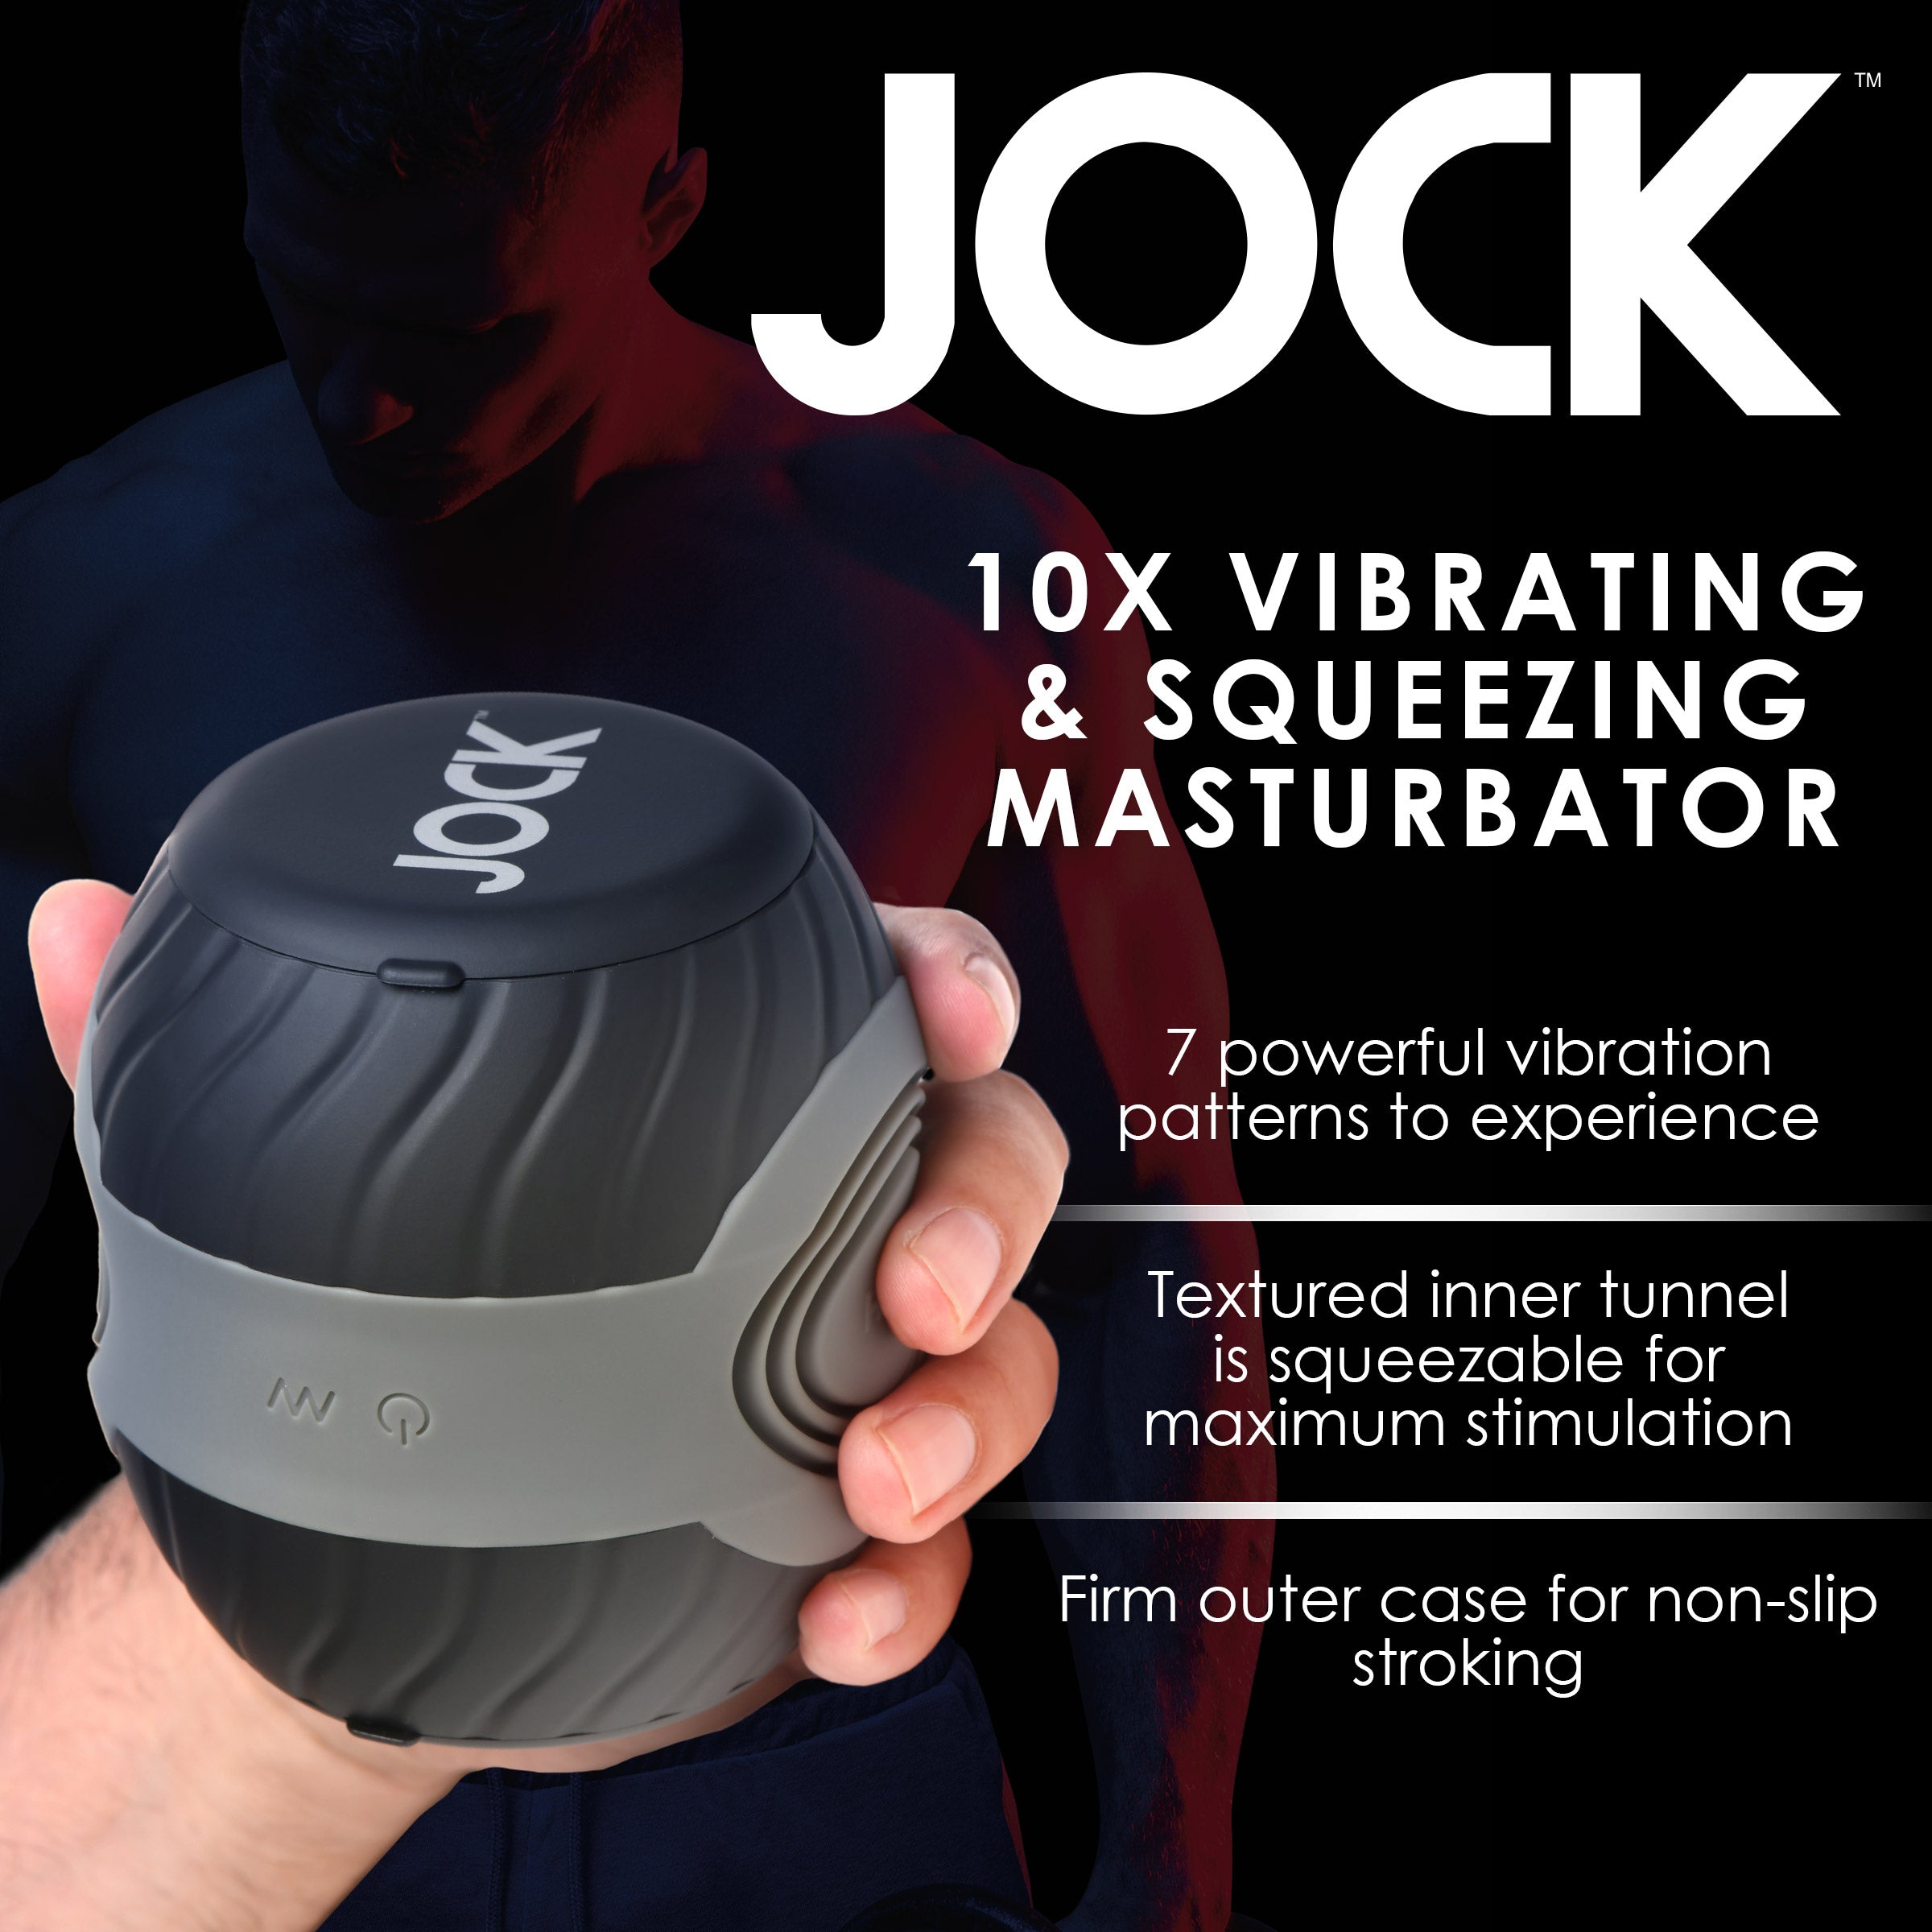 10X Vibrating & Squeezing Masturbator